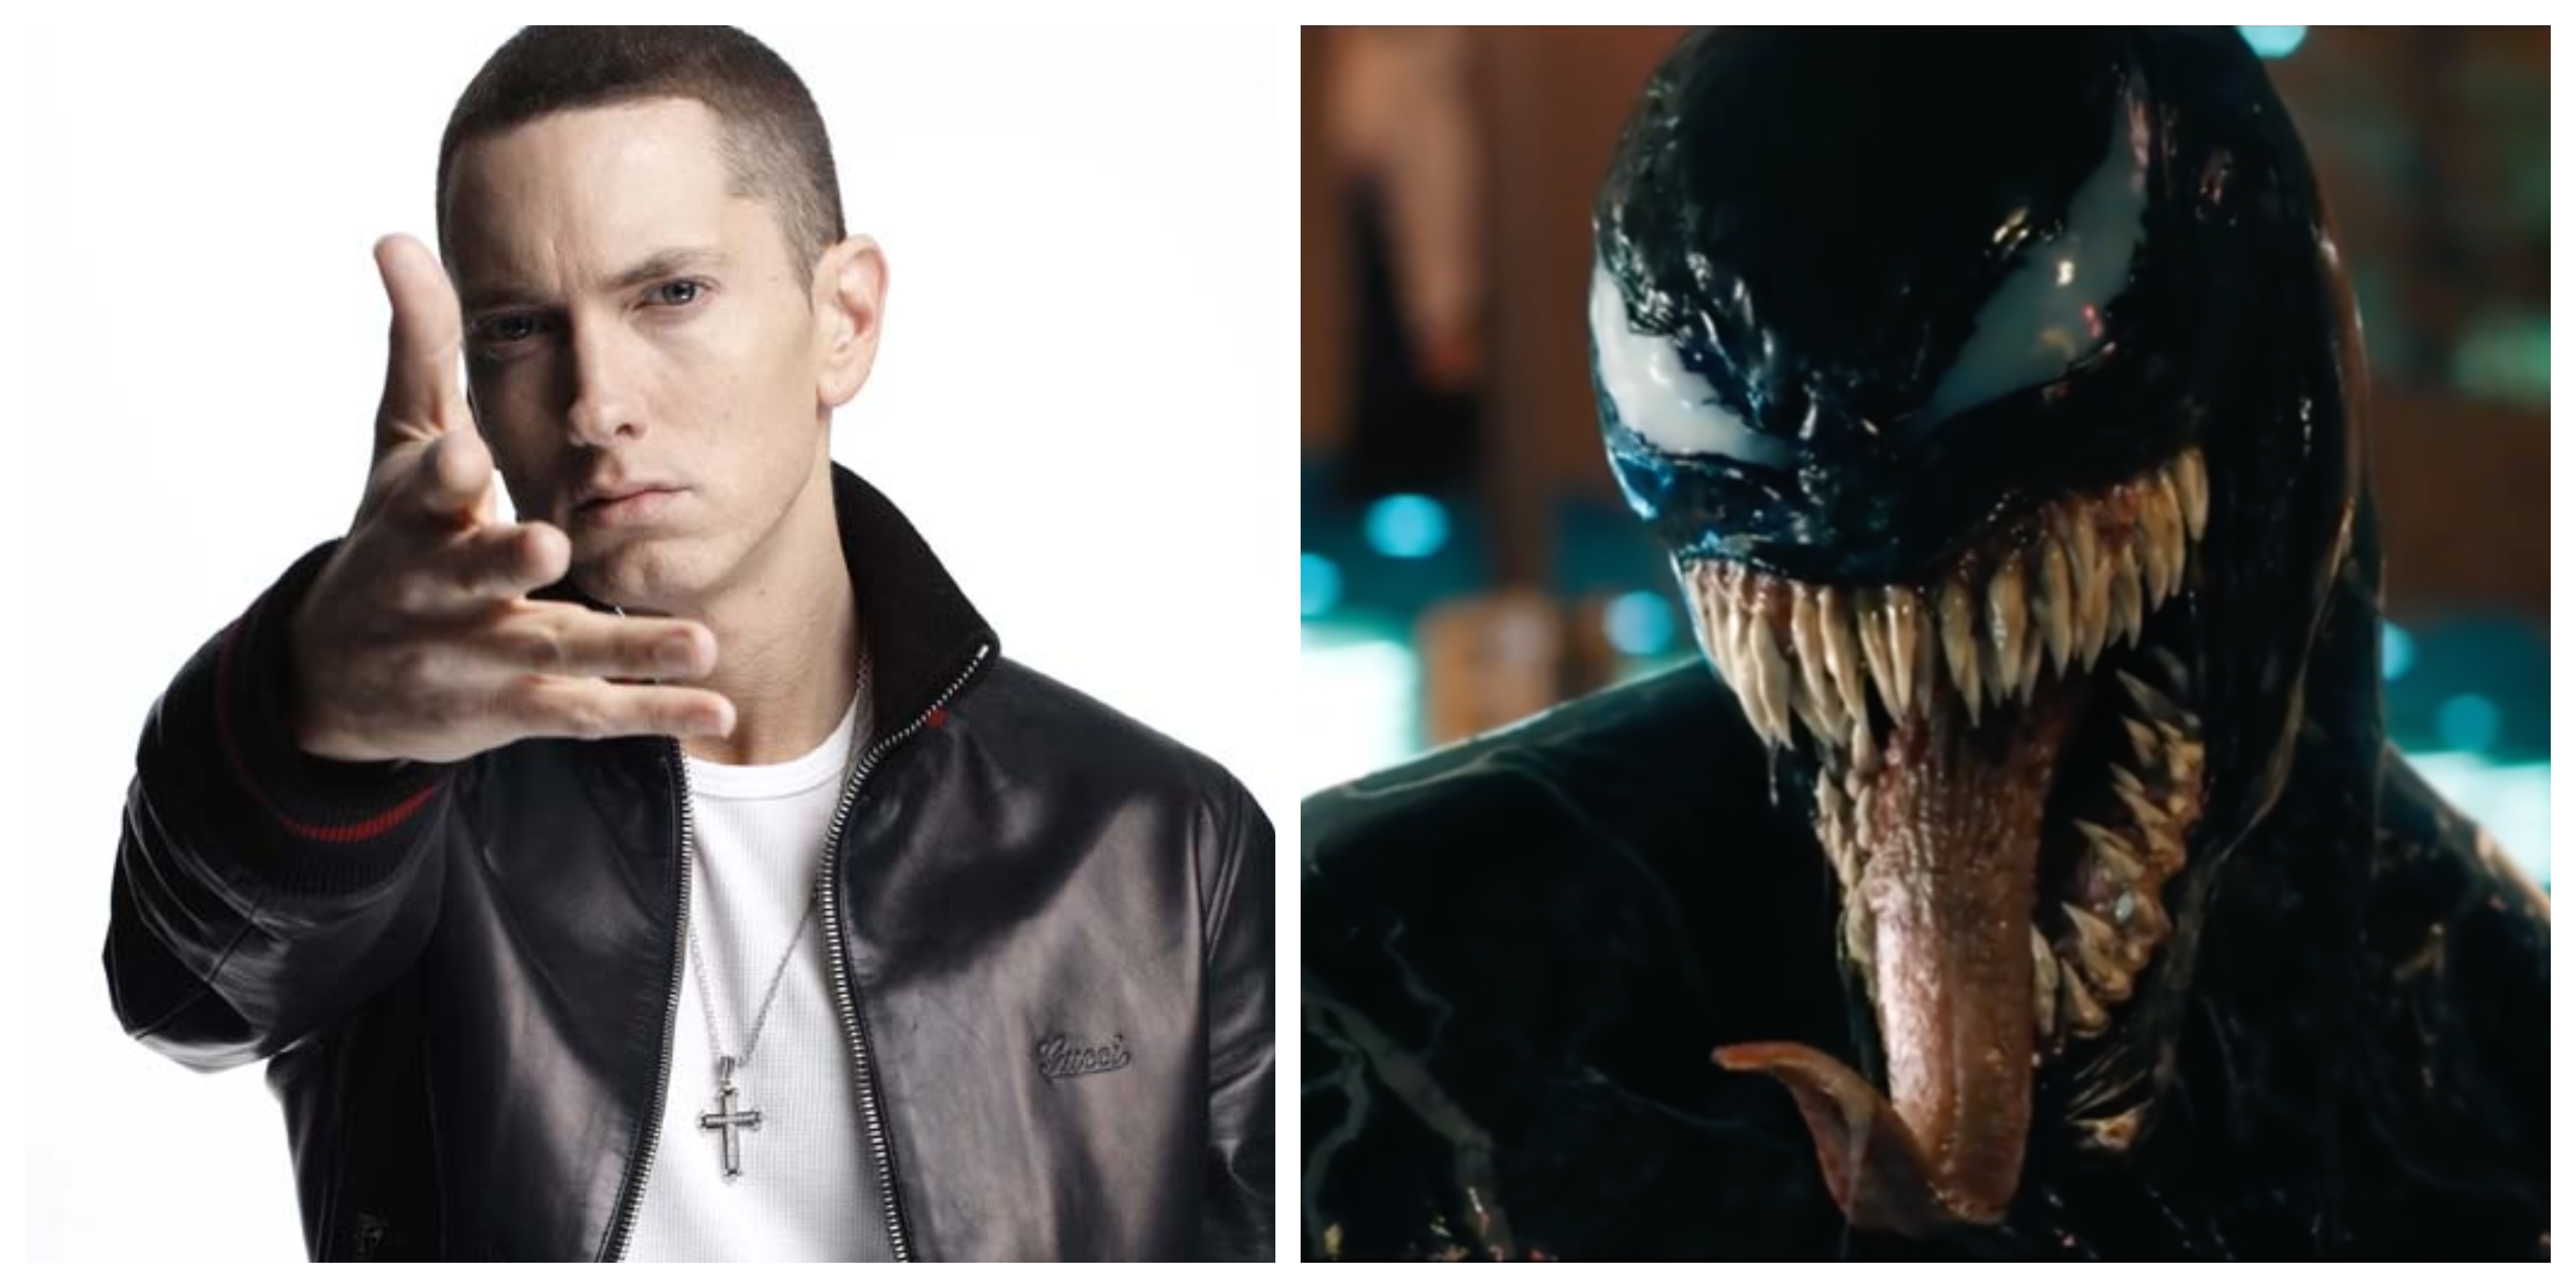 Eminem anuncia el video oficial de “Venom” y comparte el primer clip